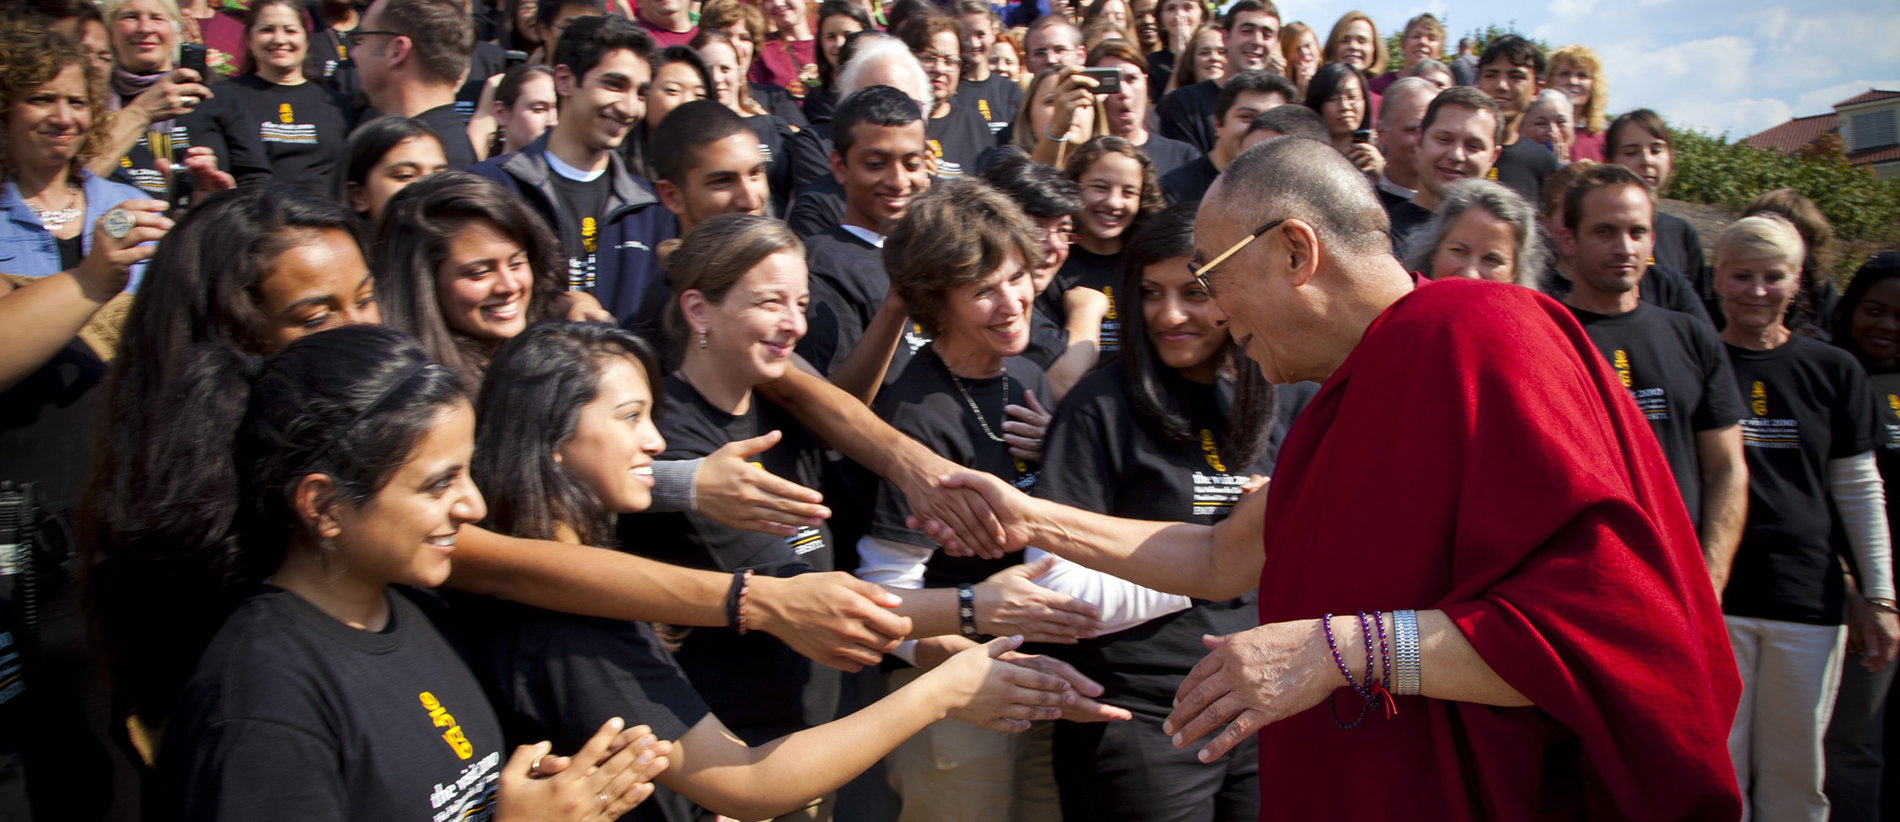 the dalai lama greets a crowd